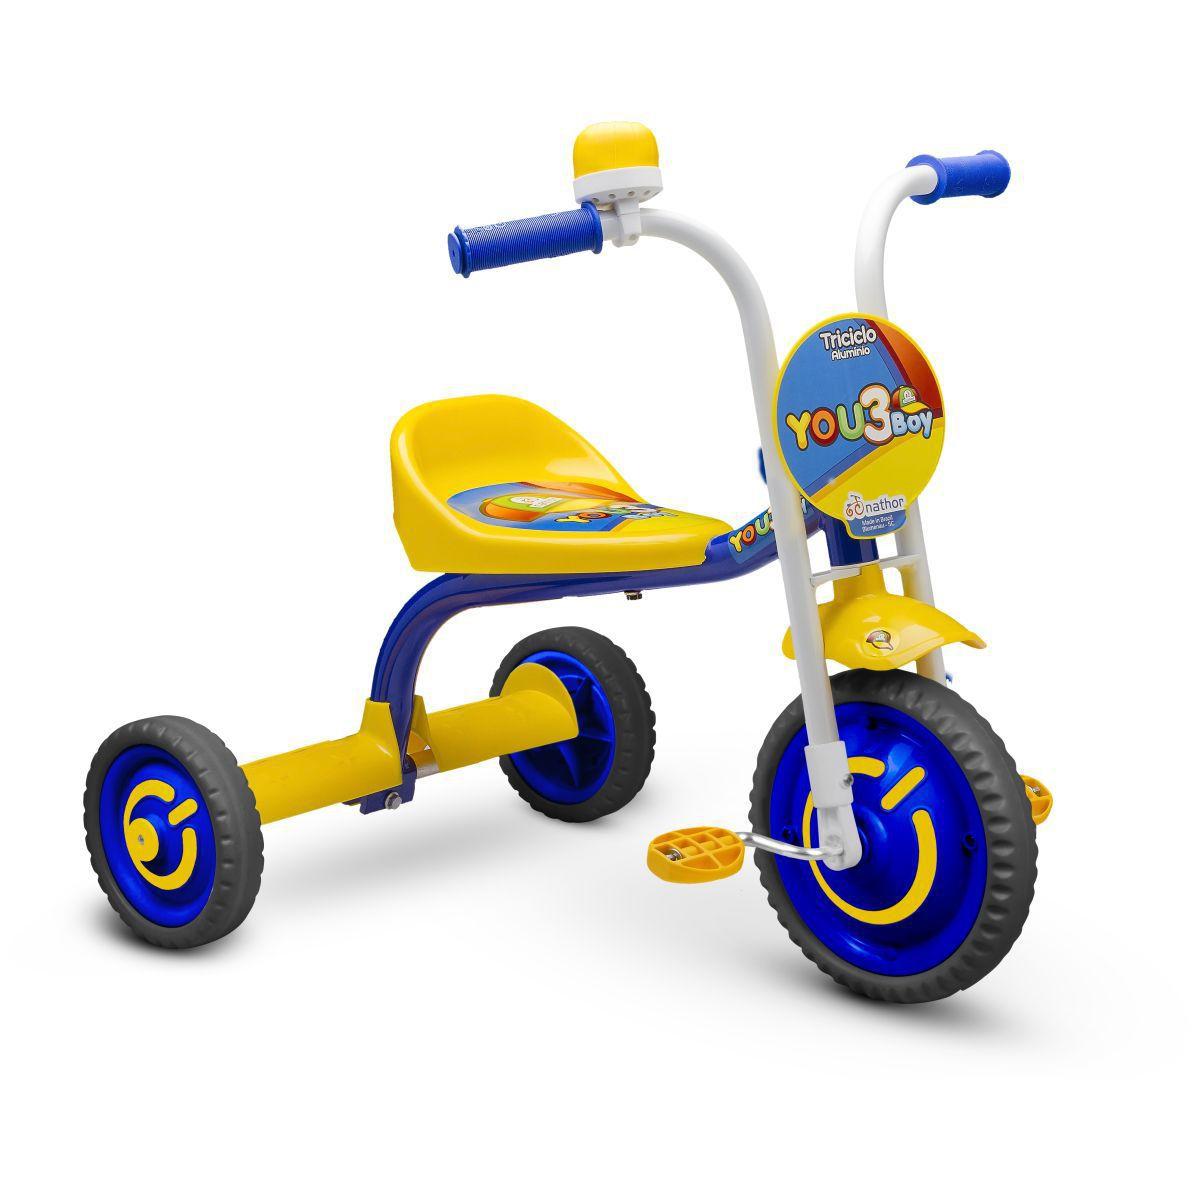 Triciclo-Infantil-You-3-Boy-Nathor-Azul-Amarelo-2776